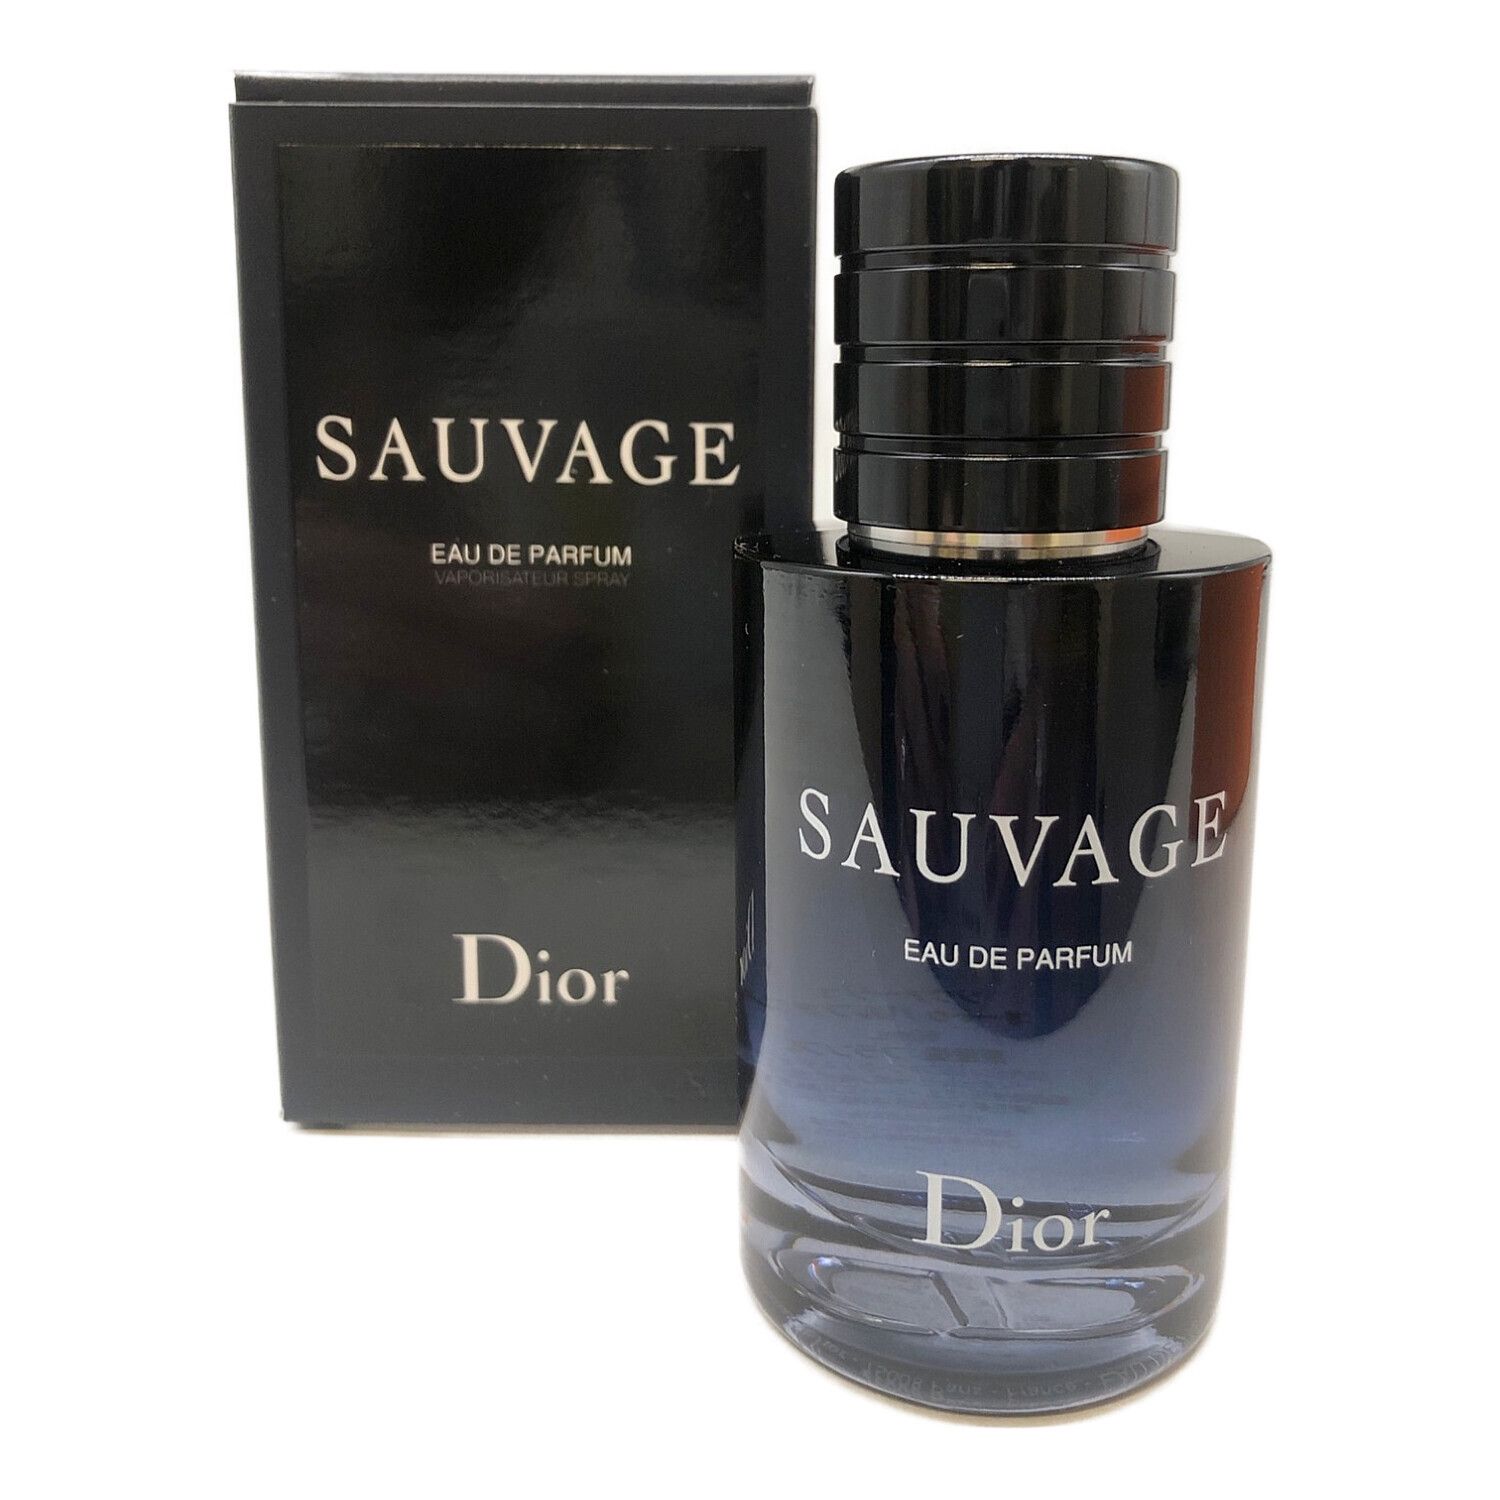 Christian Dior (クリスチャン ディオール) 香水 ソヴァージュオードゥ